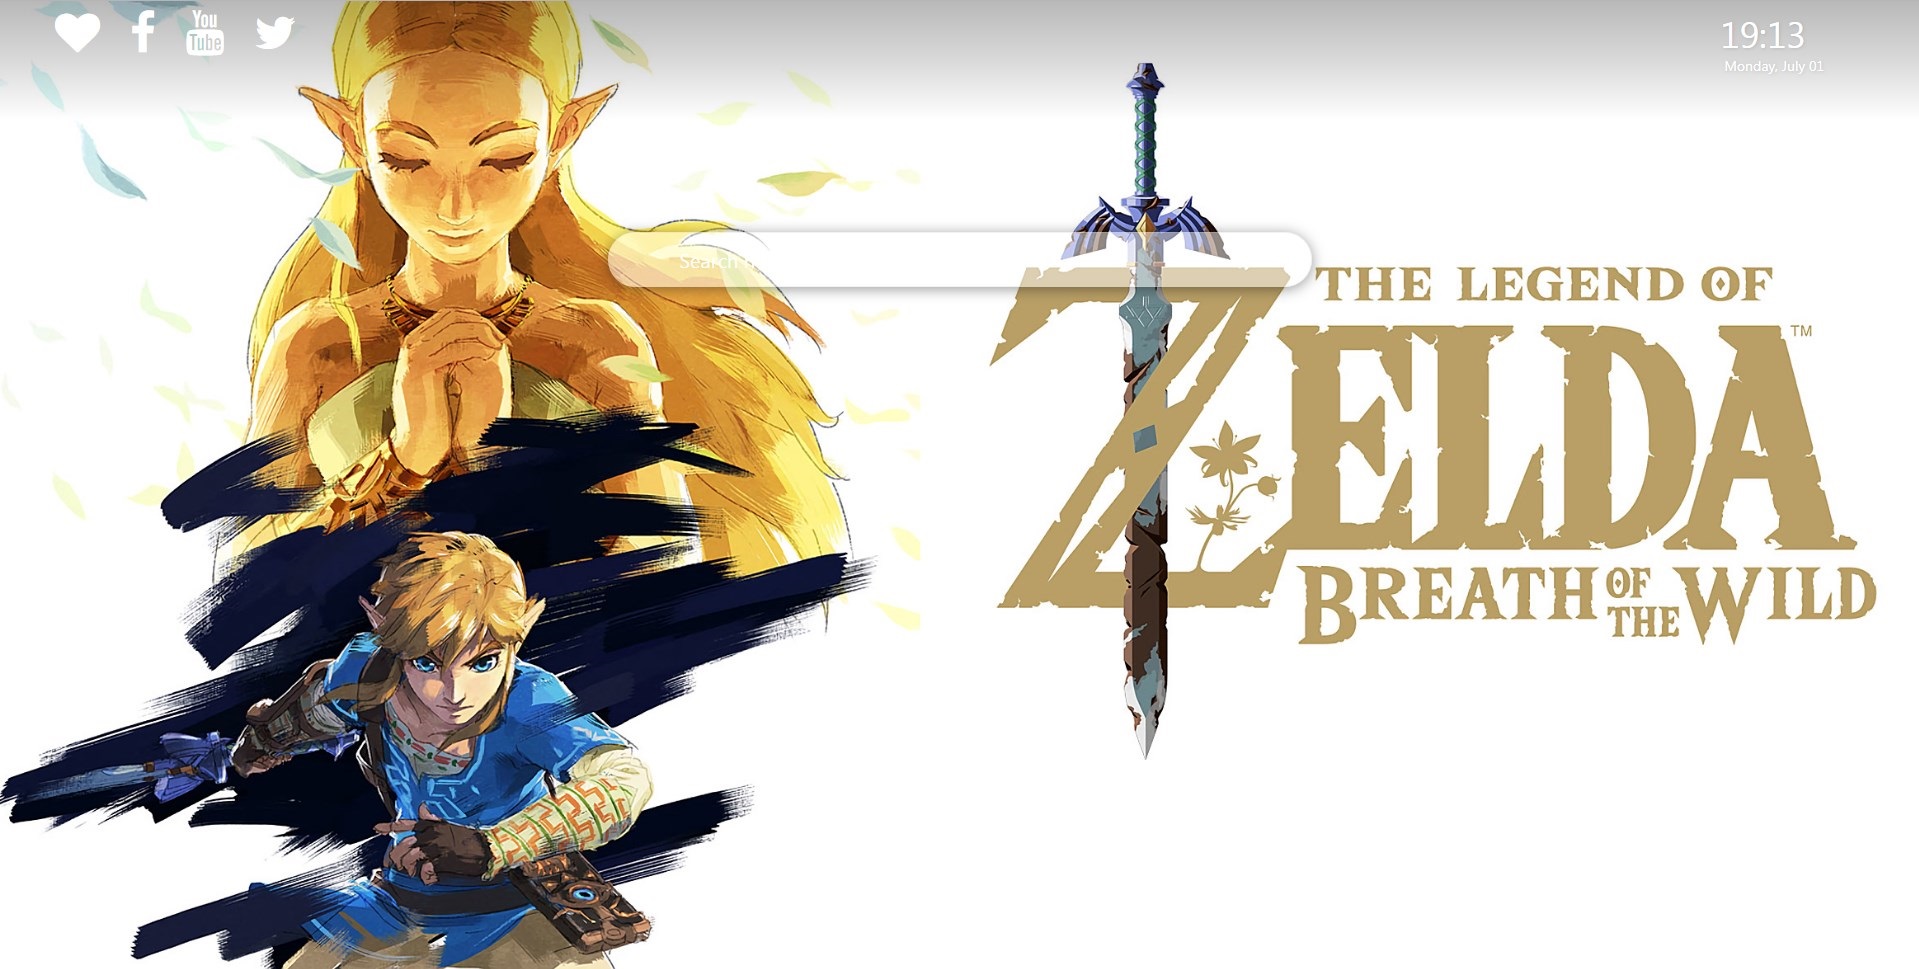 Legend Of Zelda Breath Of The Wild , HD Wallpaper & Backgrounds